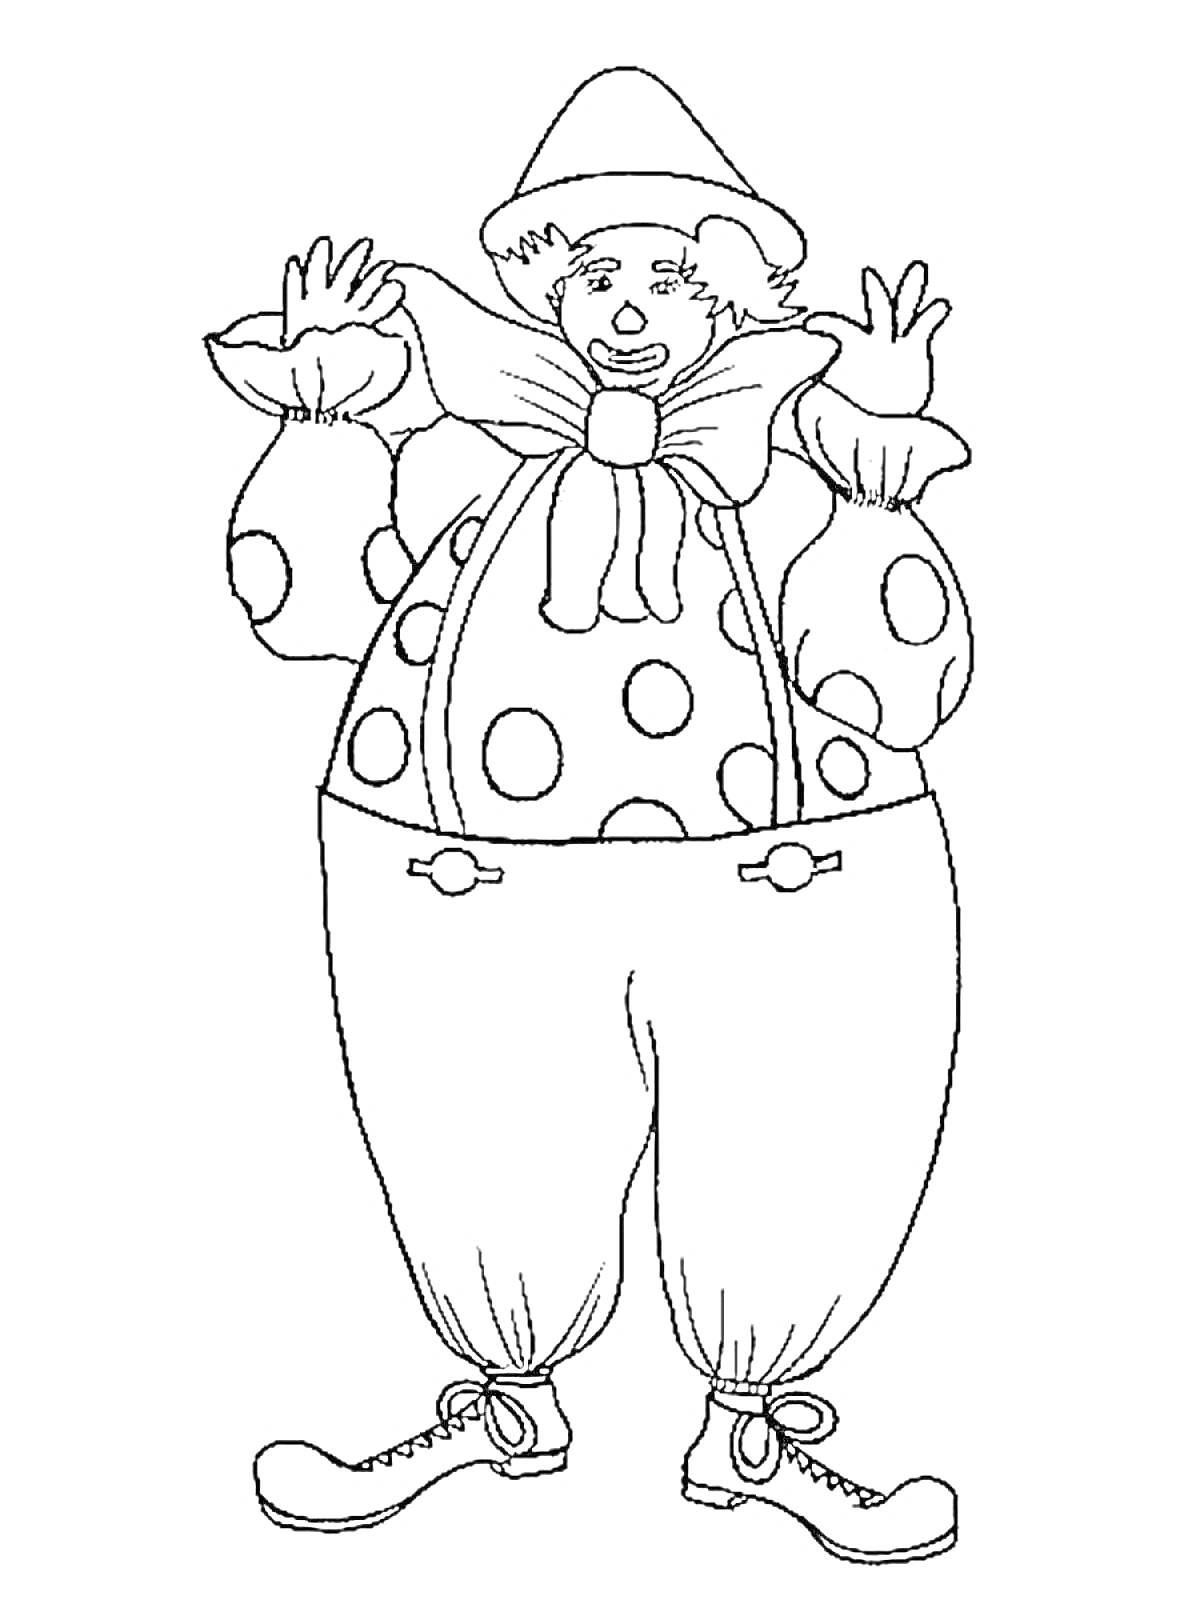 Раскраска Клоун с большими полкадот покрышками, бантом и шляпой, руки вверх